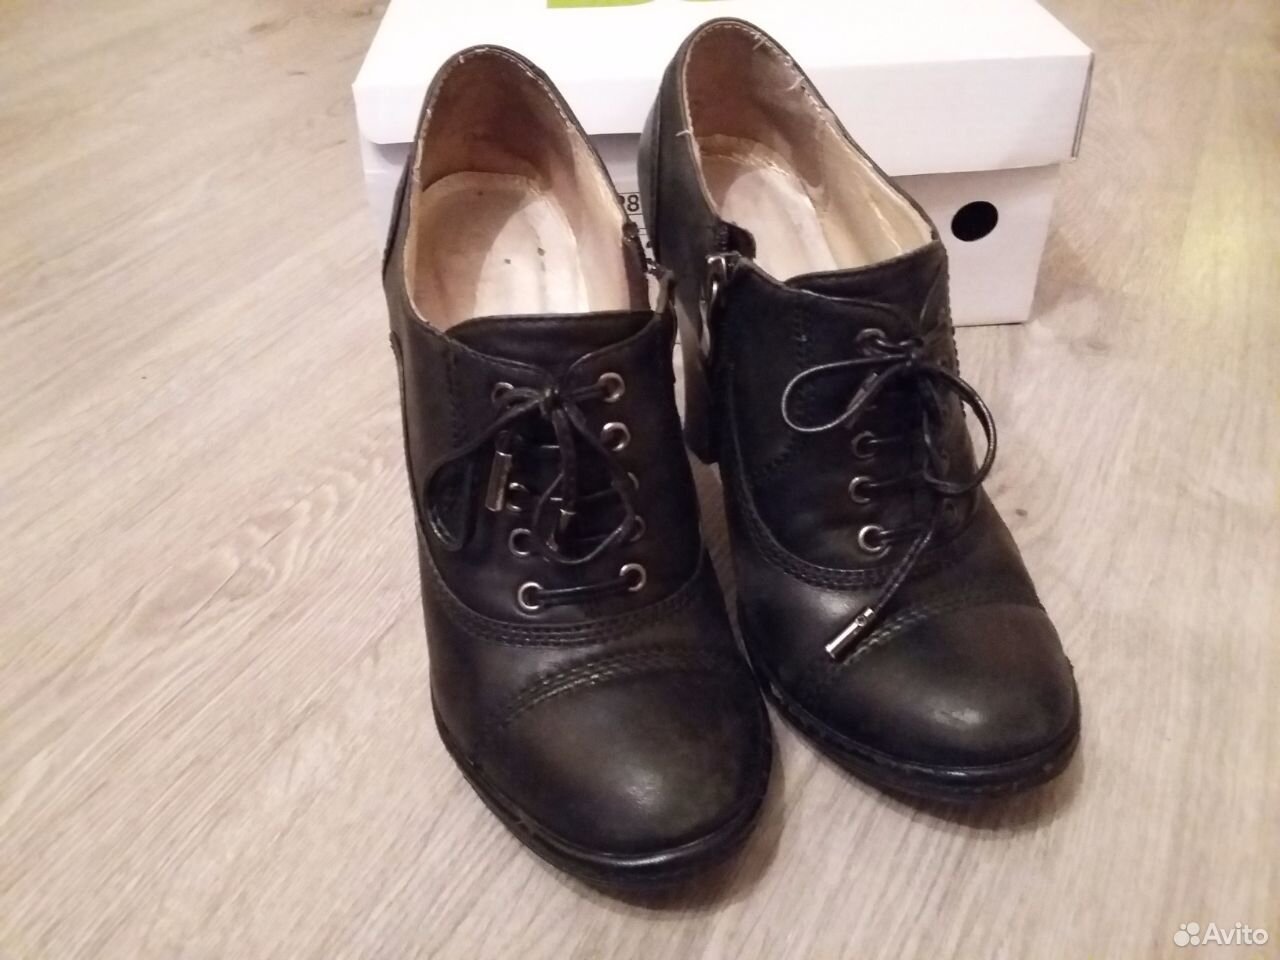 Авито обувь мужская 45